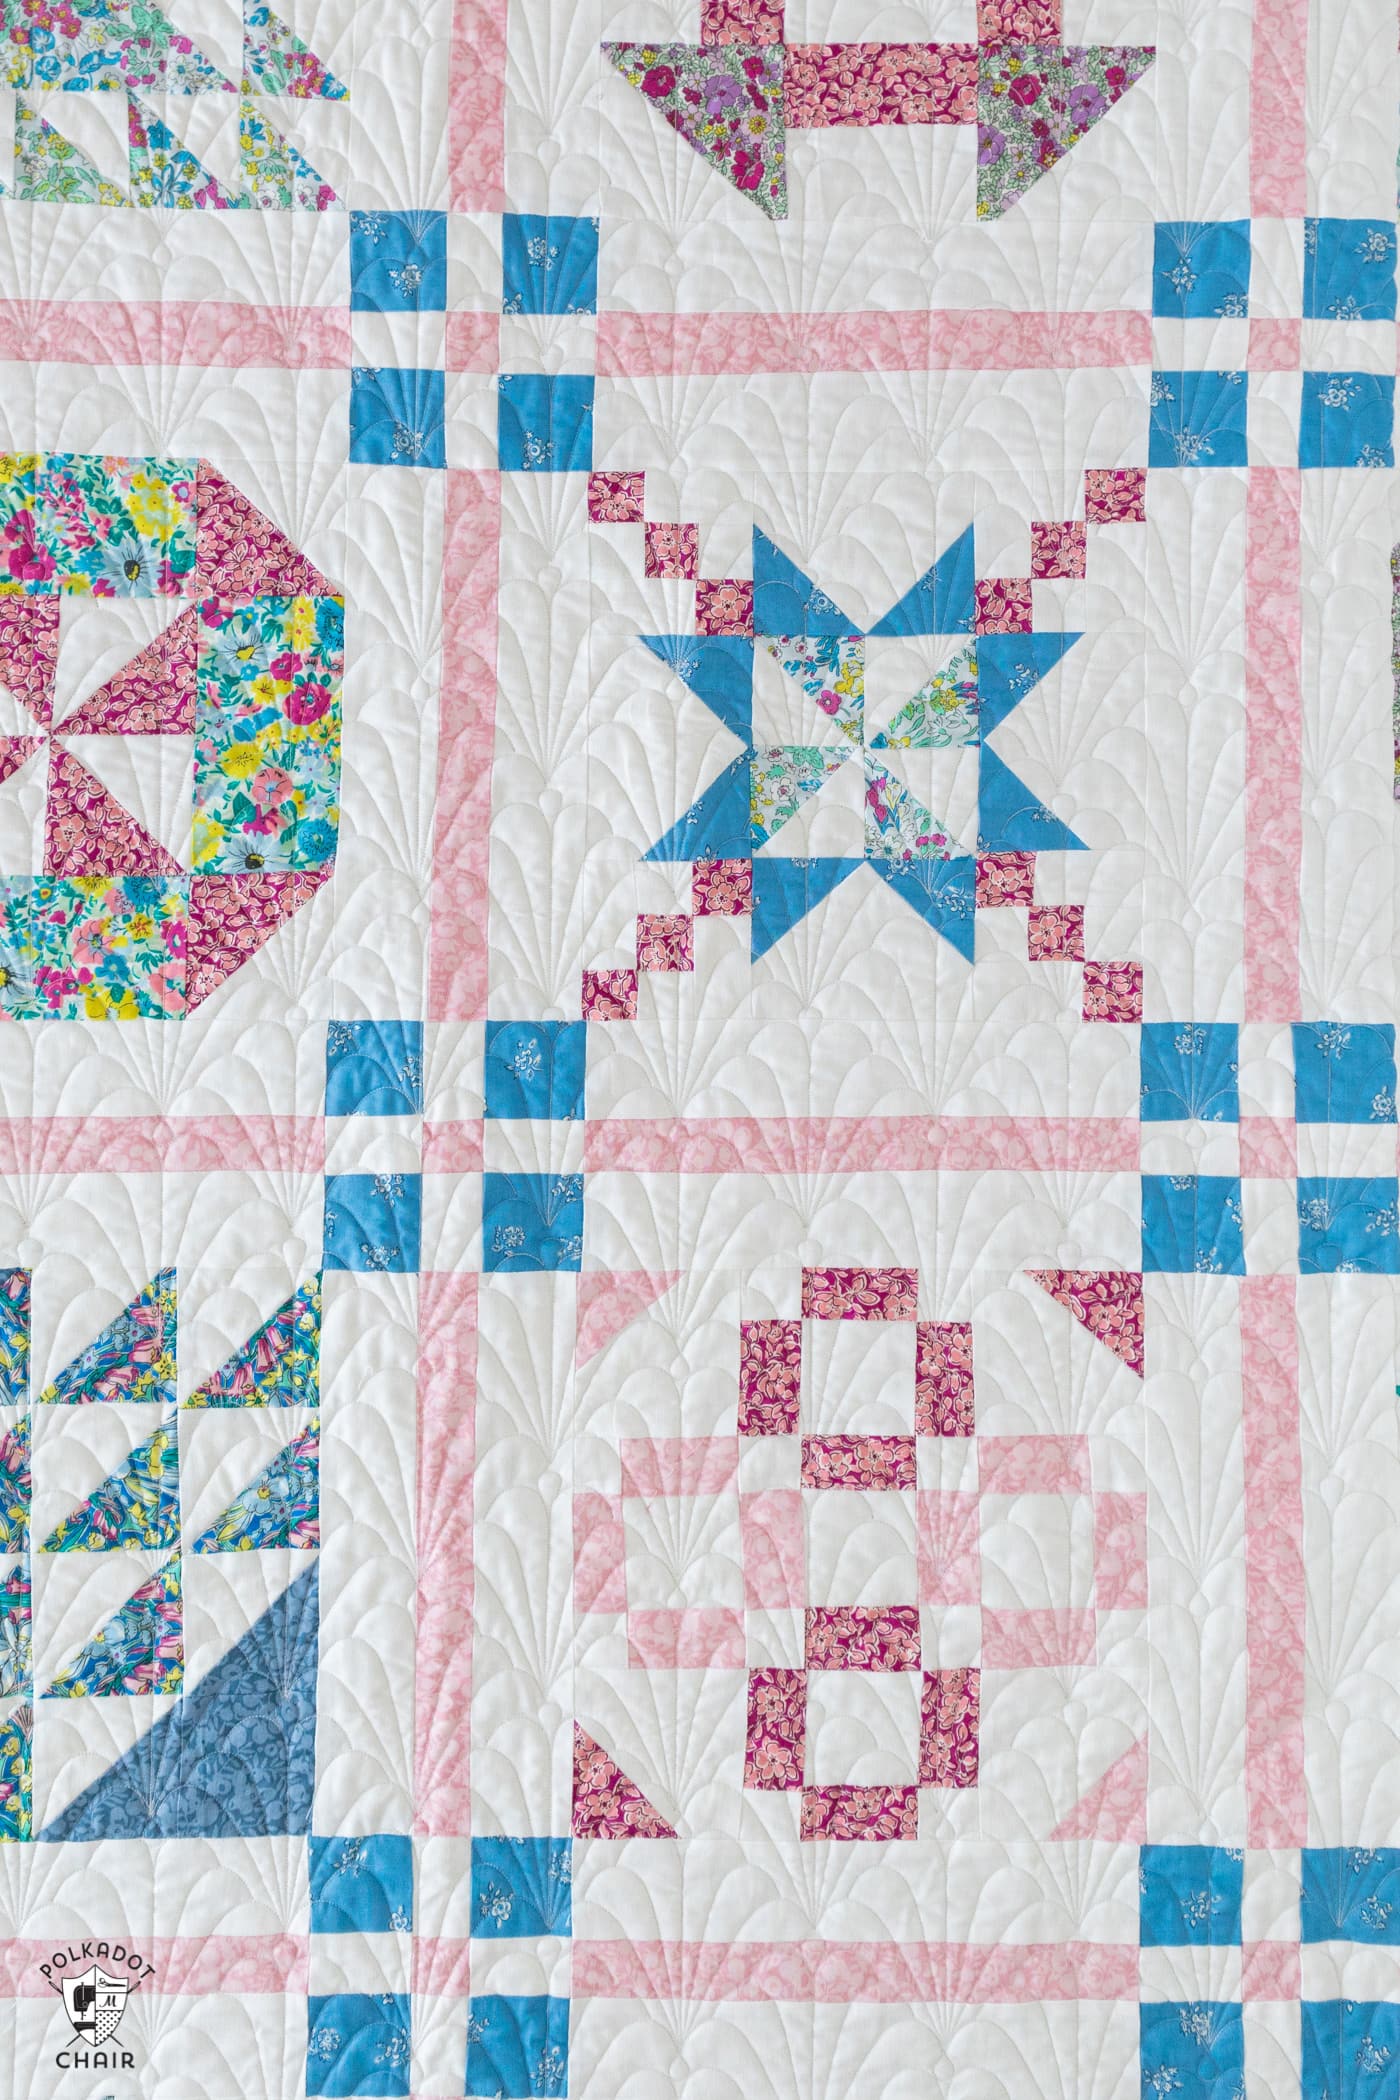 Free Patterns  Riley Blake Designs